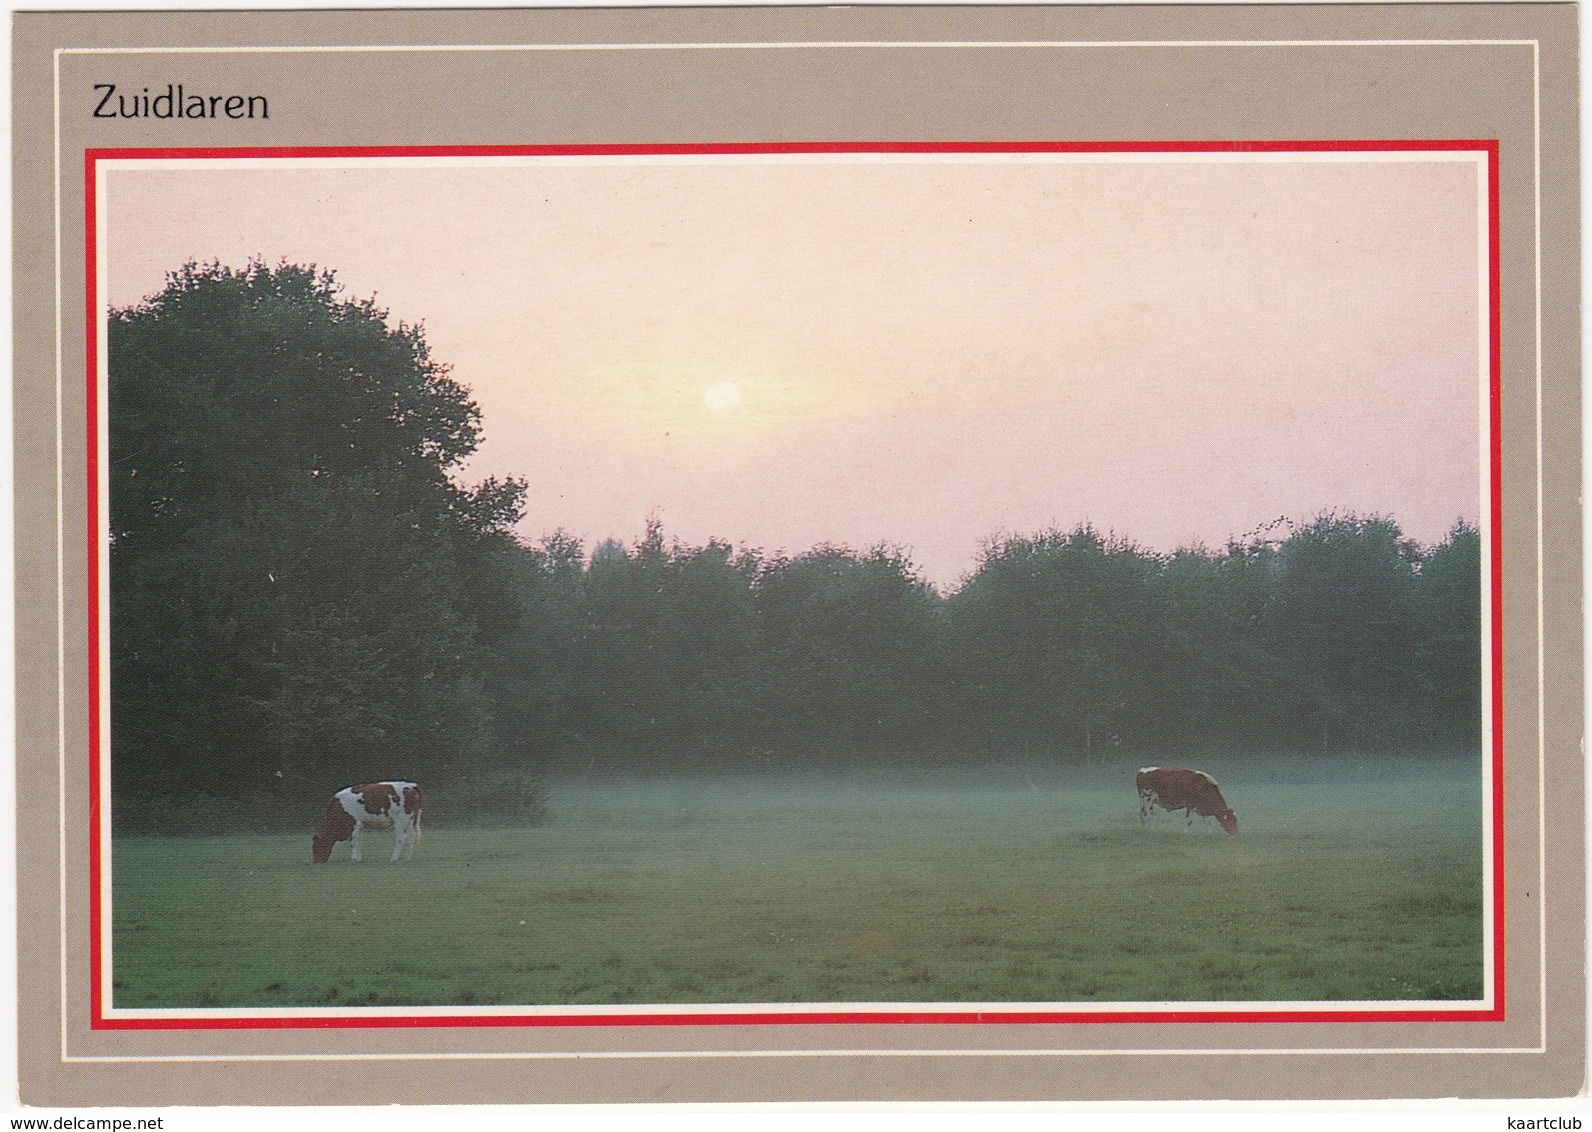 Zuidlaren - Rood-bonte Koeien In De Grondmist  - (Drenthe,Holland/Nederland) - Zuidlaren